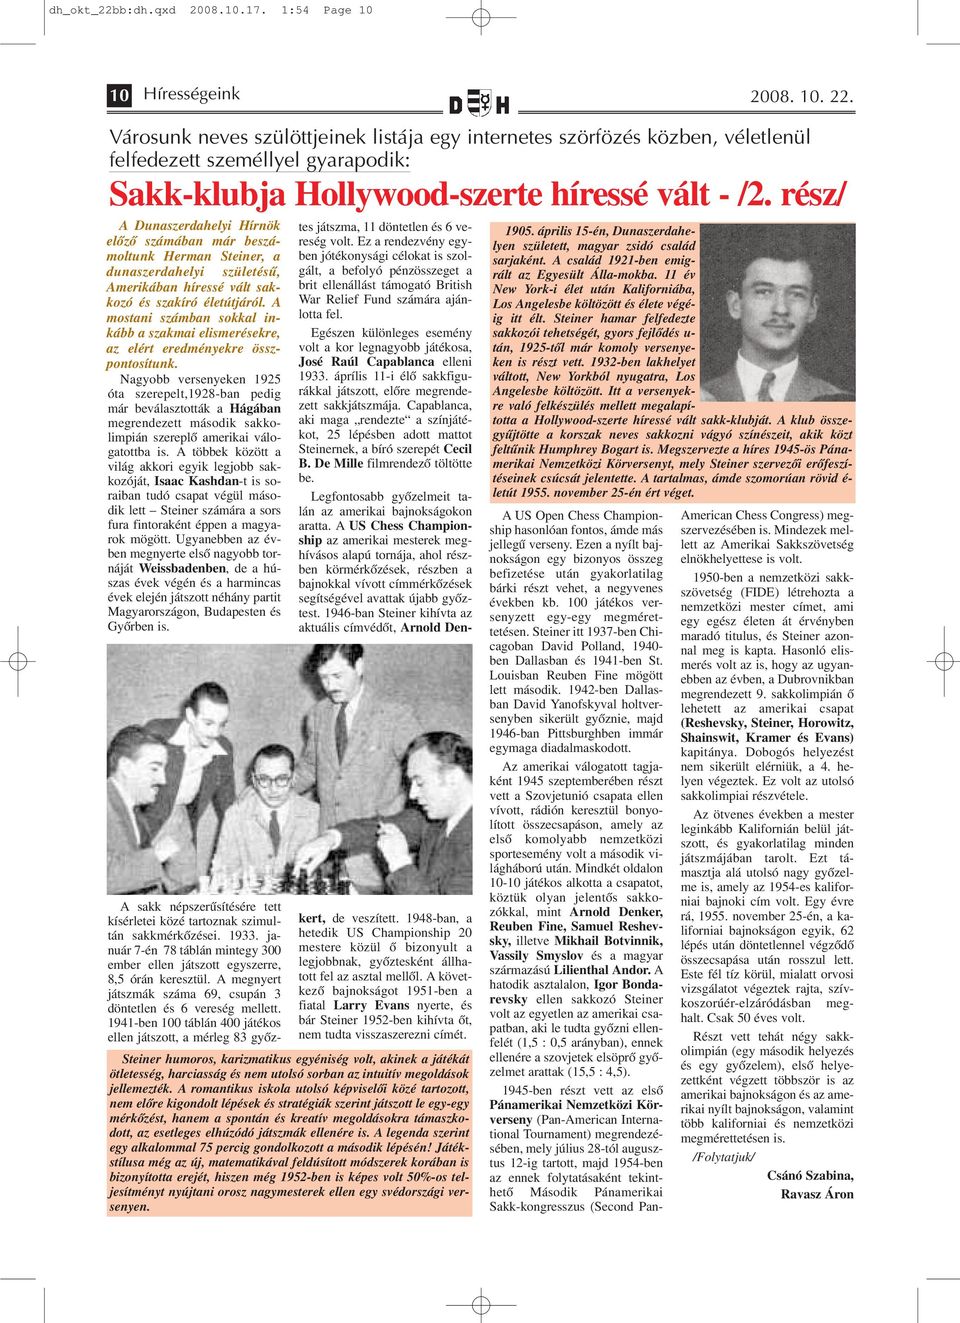 rész/ A Dunaszerdahelyi Hírnök előző számában már beszámoltunk Herman Steiner, a dunaszerdahelyi születésű, Amerikában híressé vált sakkozó és szakíró életútjáról.